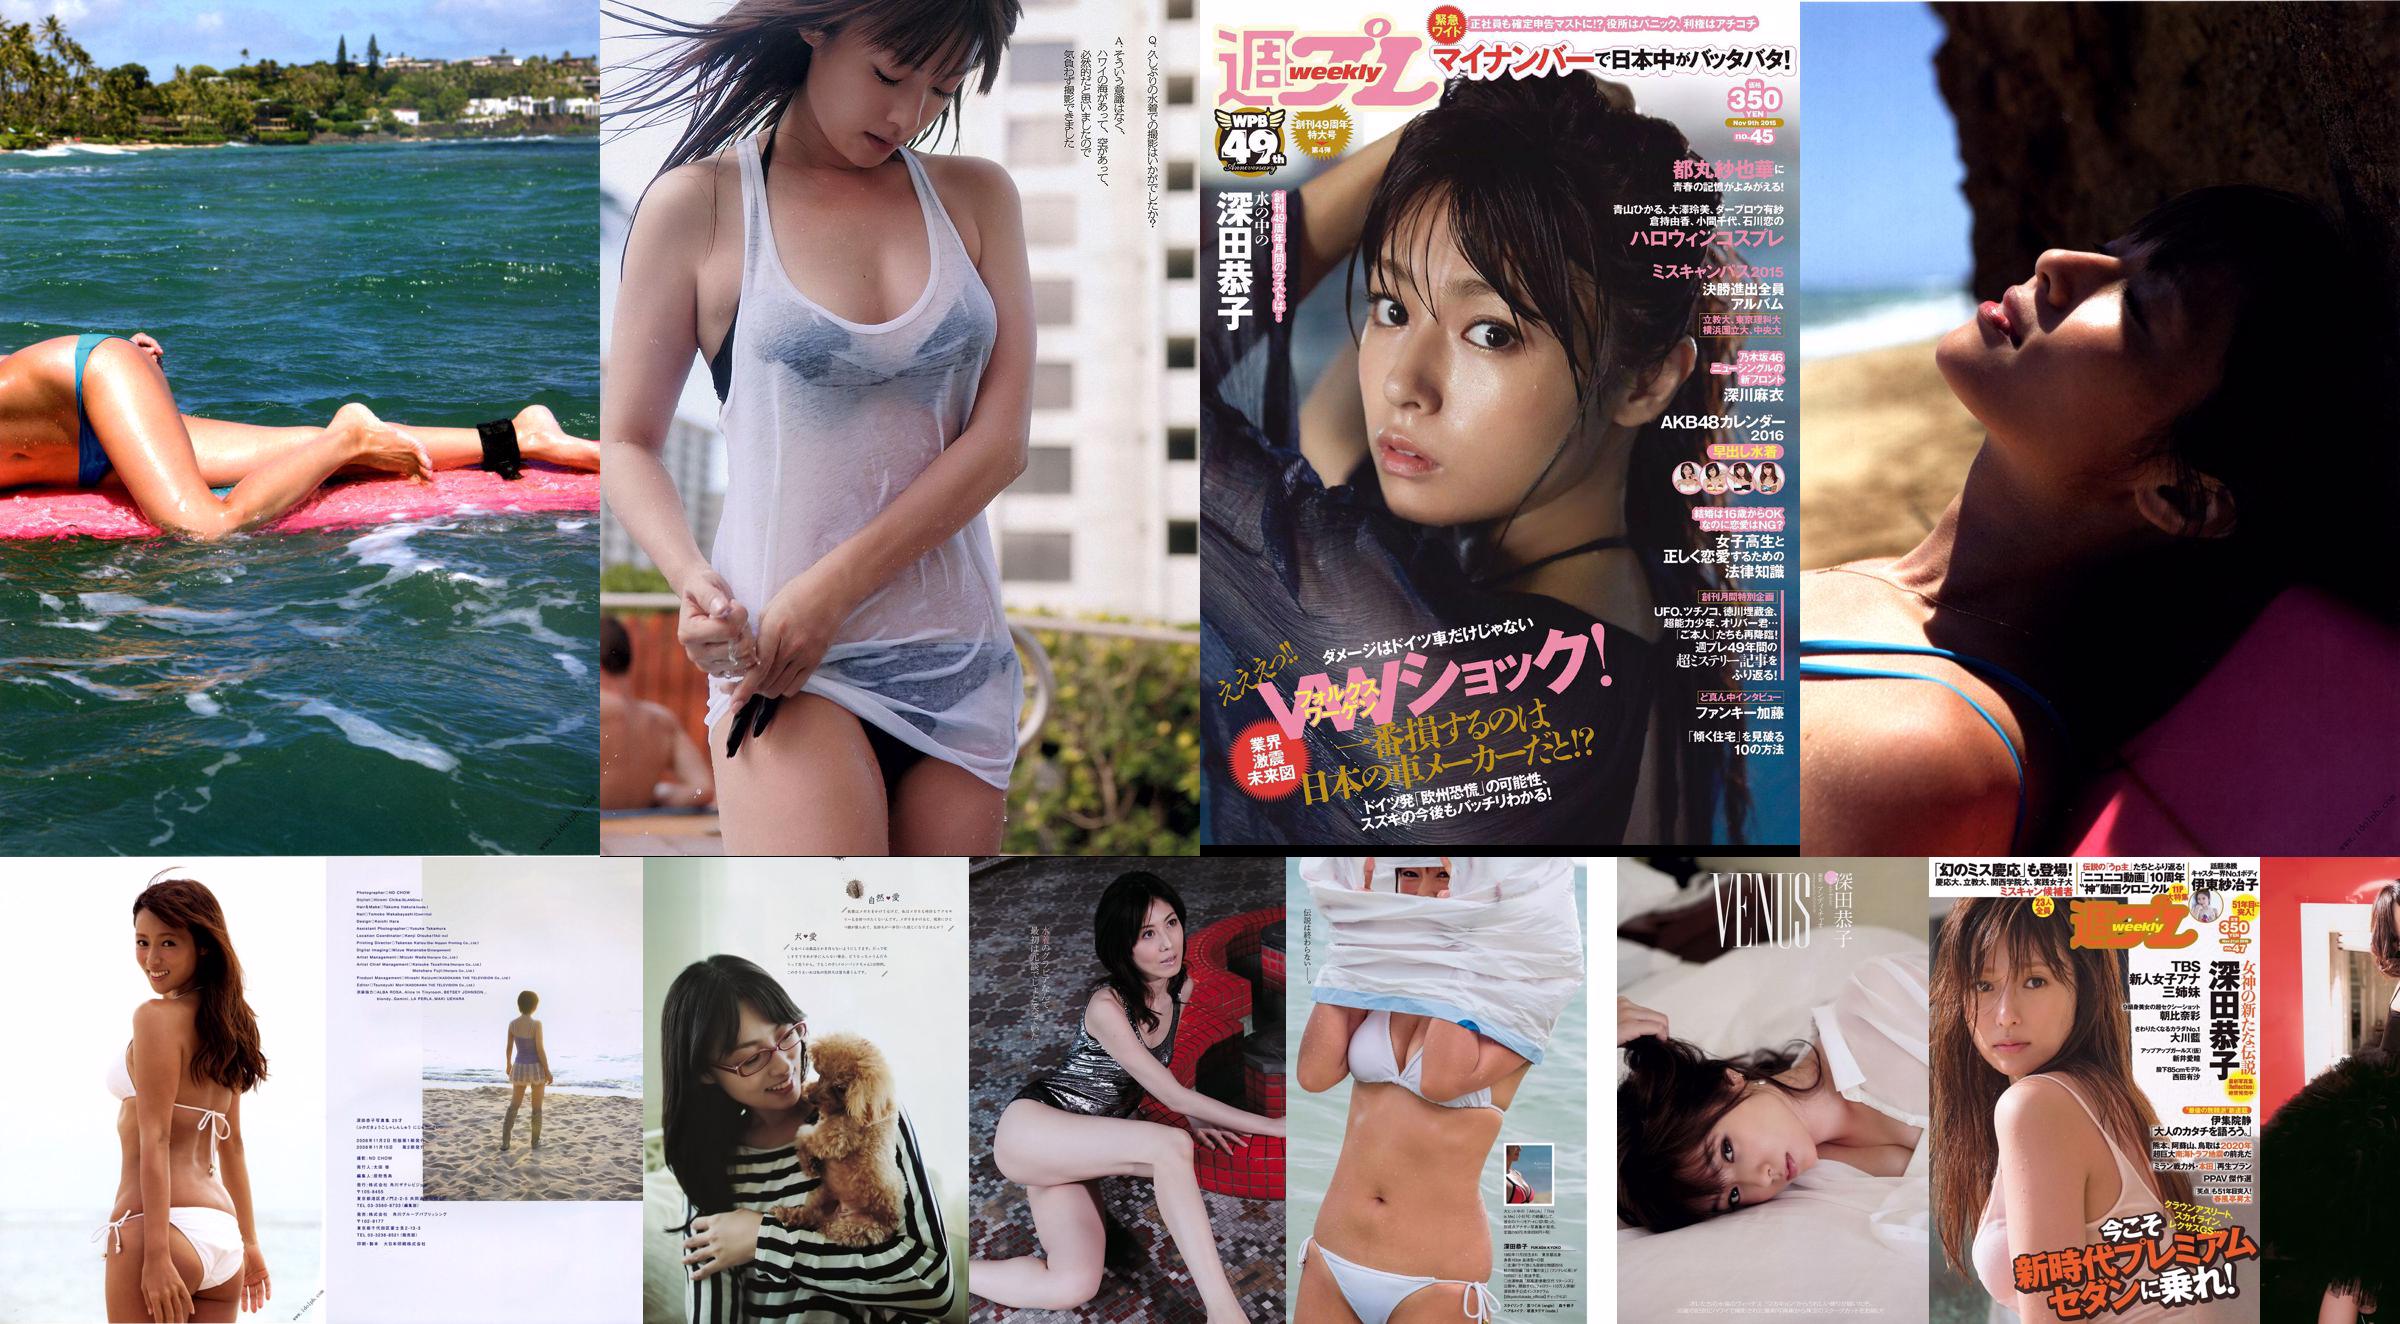 Kyoko Fukada Fumina Suzuki Mai Fukagawa Sayaka Tomaru Asana Mamoru [Weekly Playboy] 2015 nr 45 Zdjęcie No.75a965 Strona 1